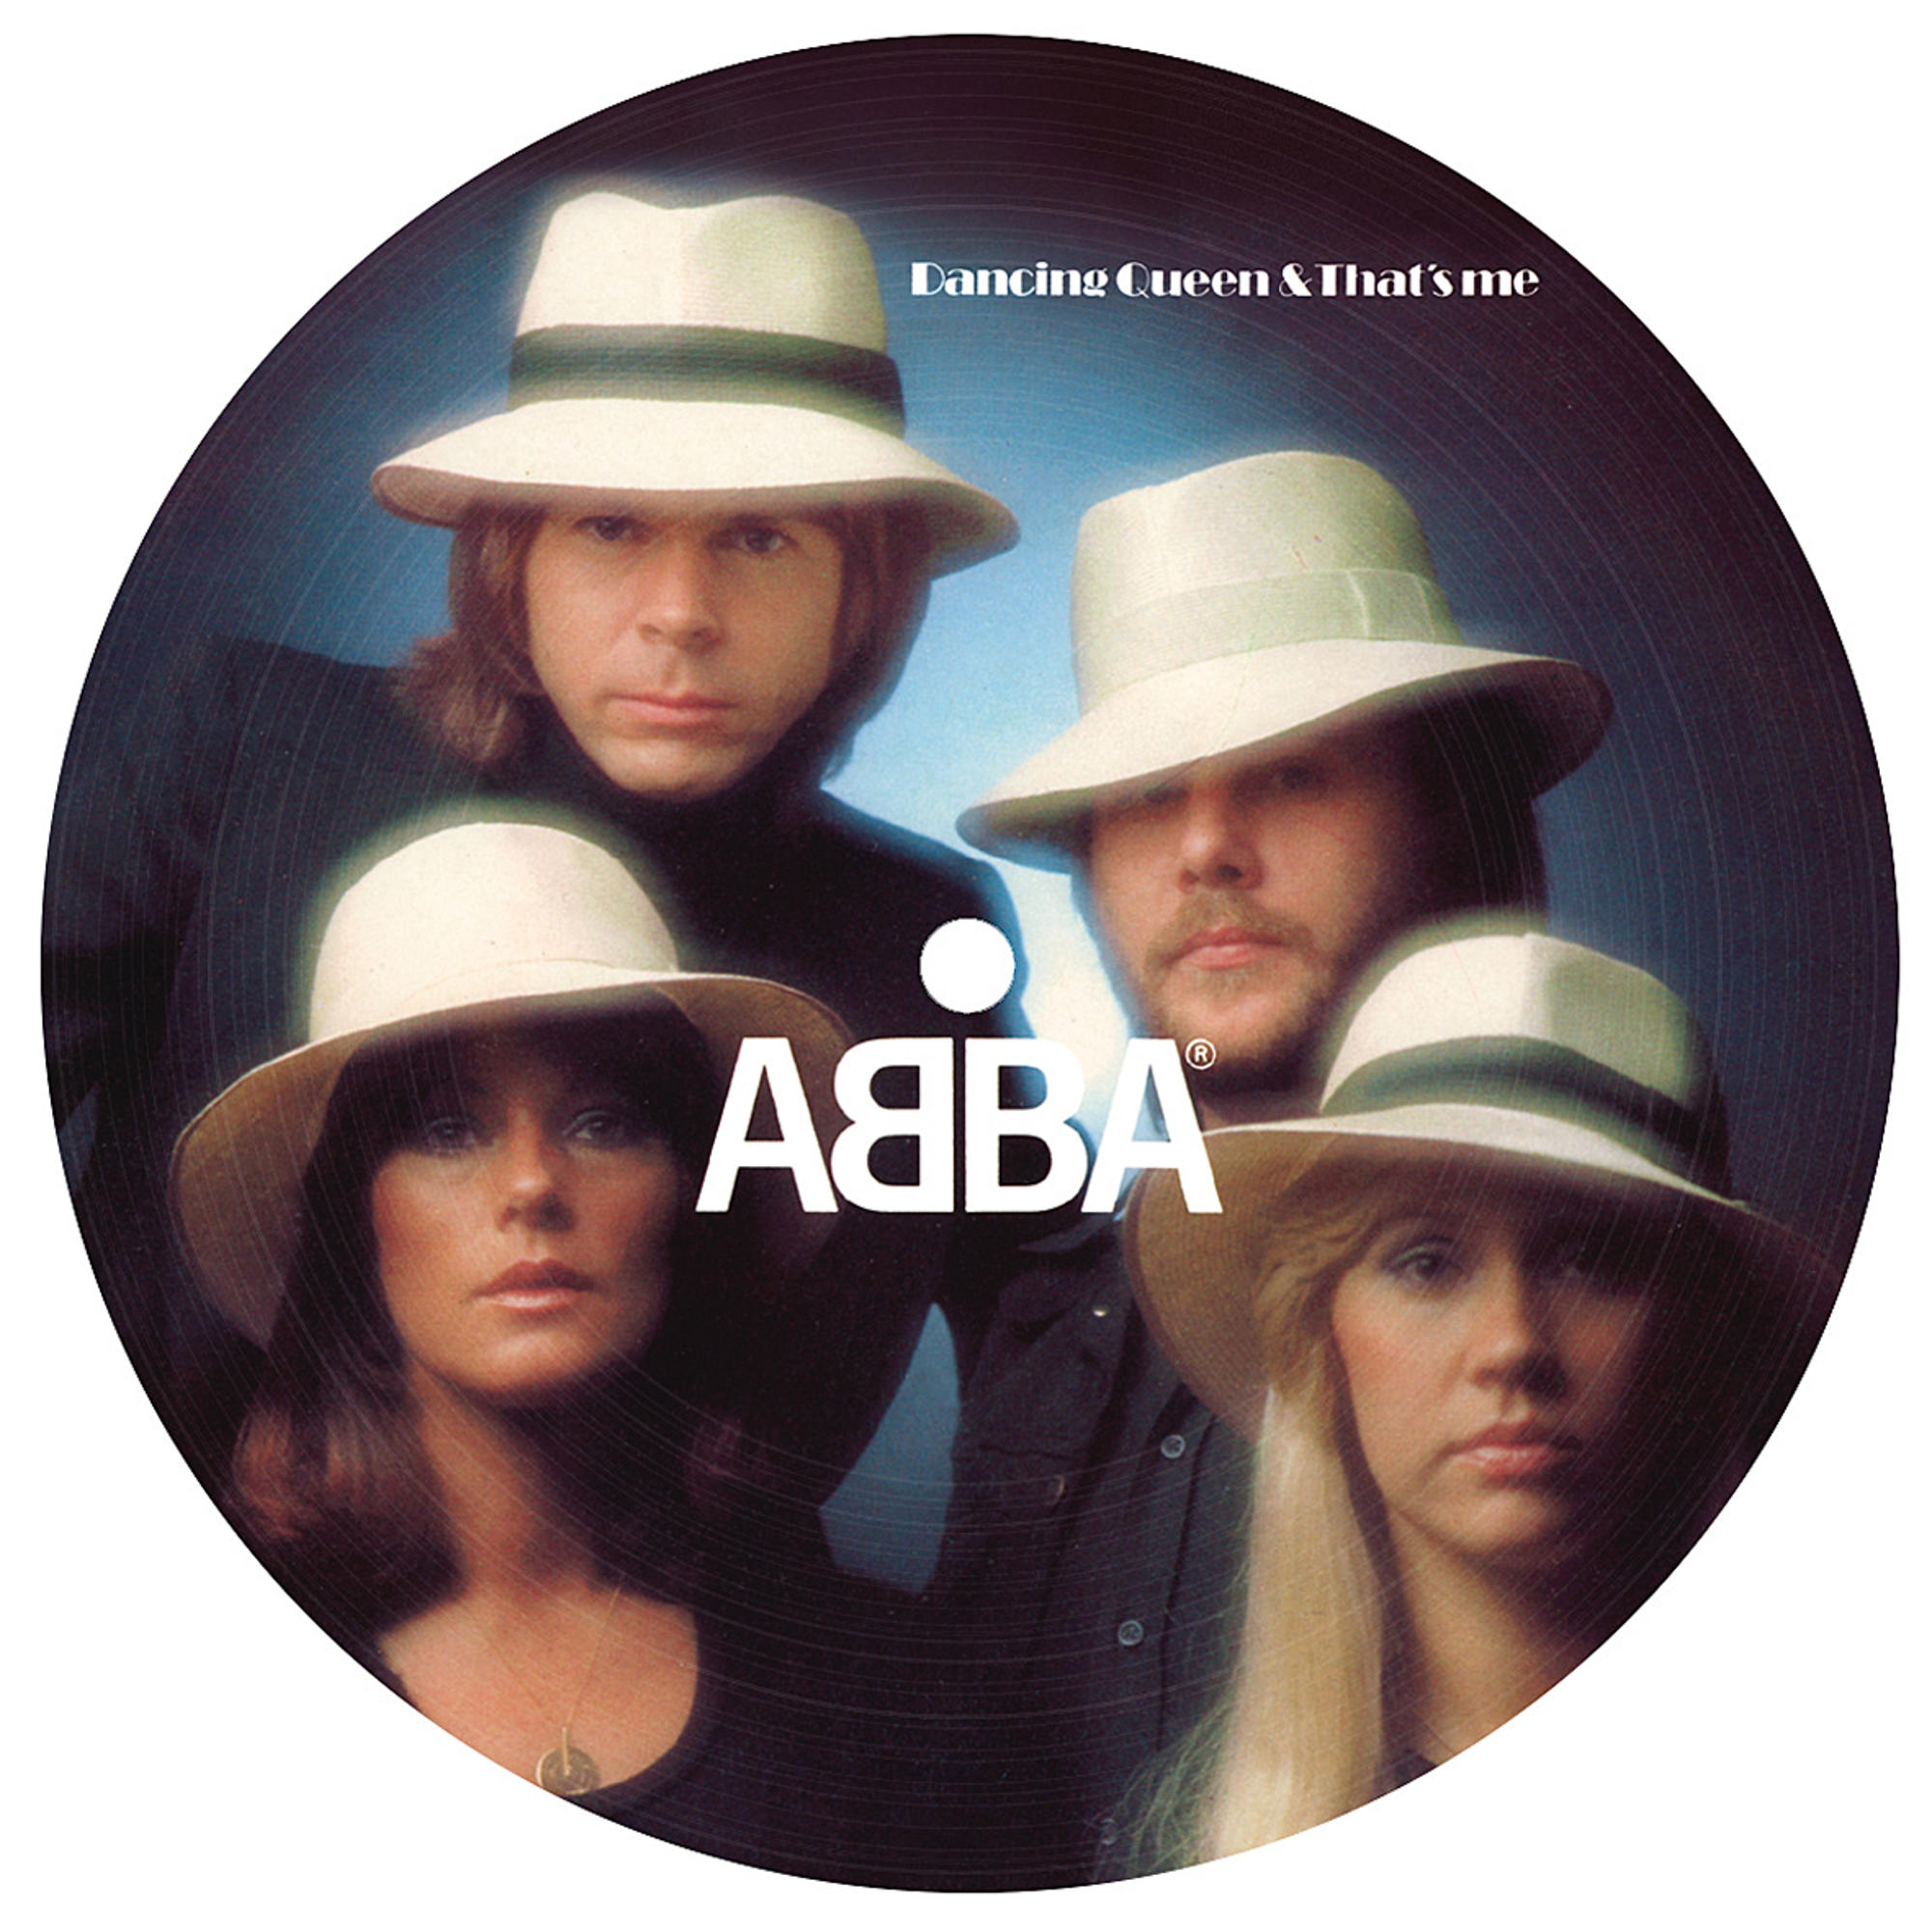 ABBA - Dancing Queen (Ltd.7? (Vinyl) - Disc) Picture